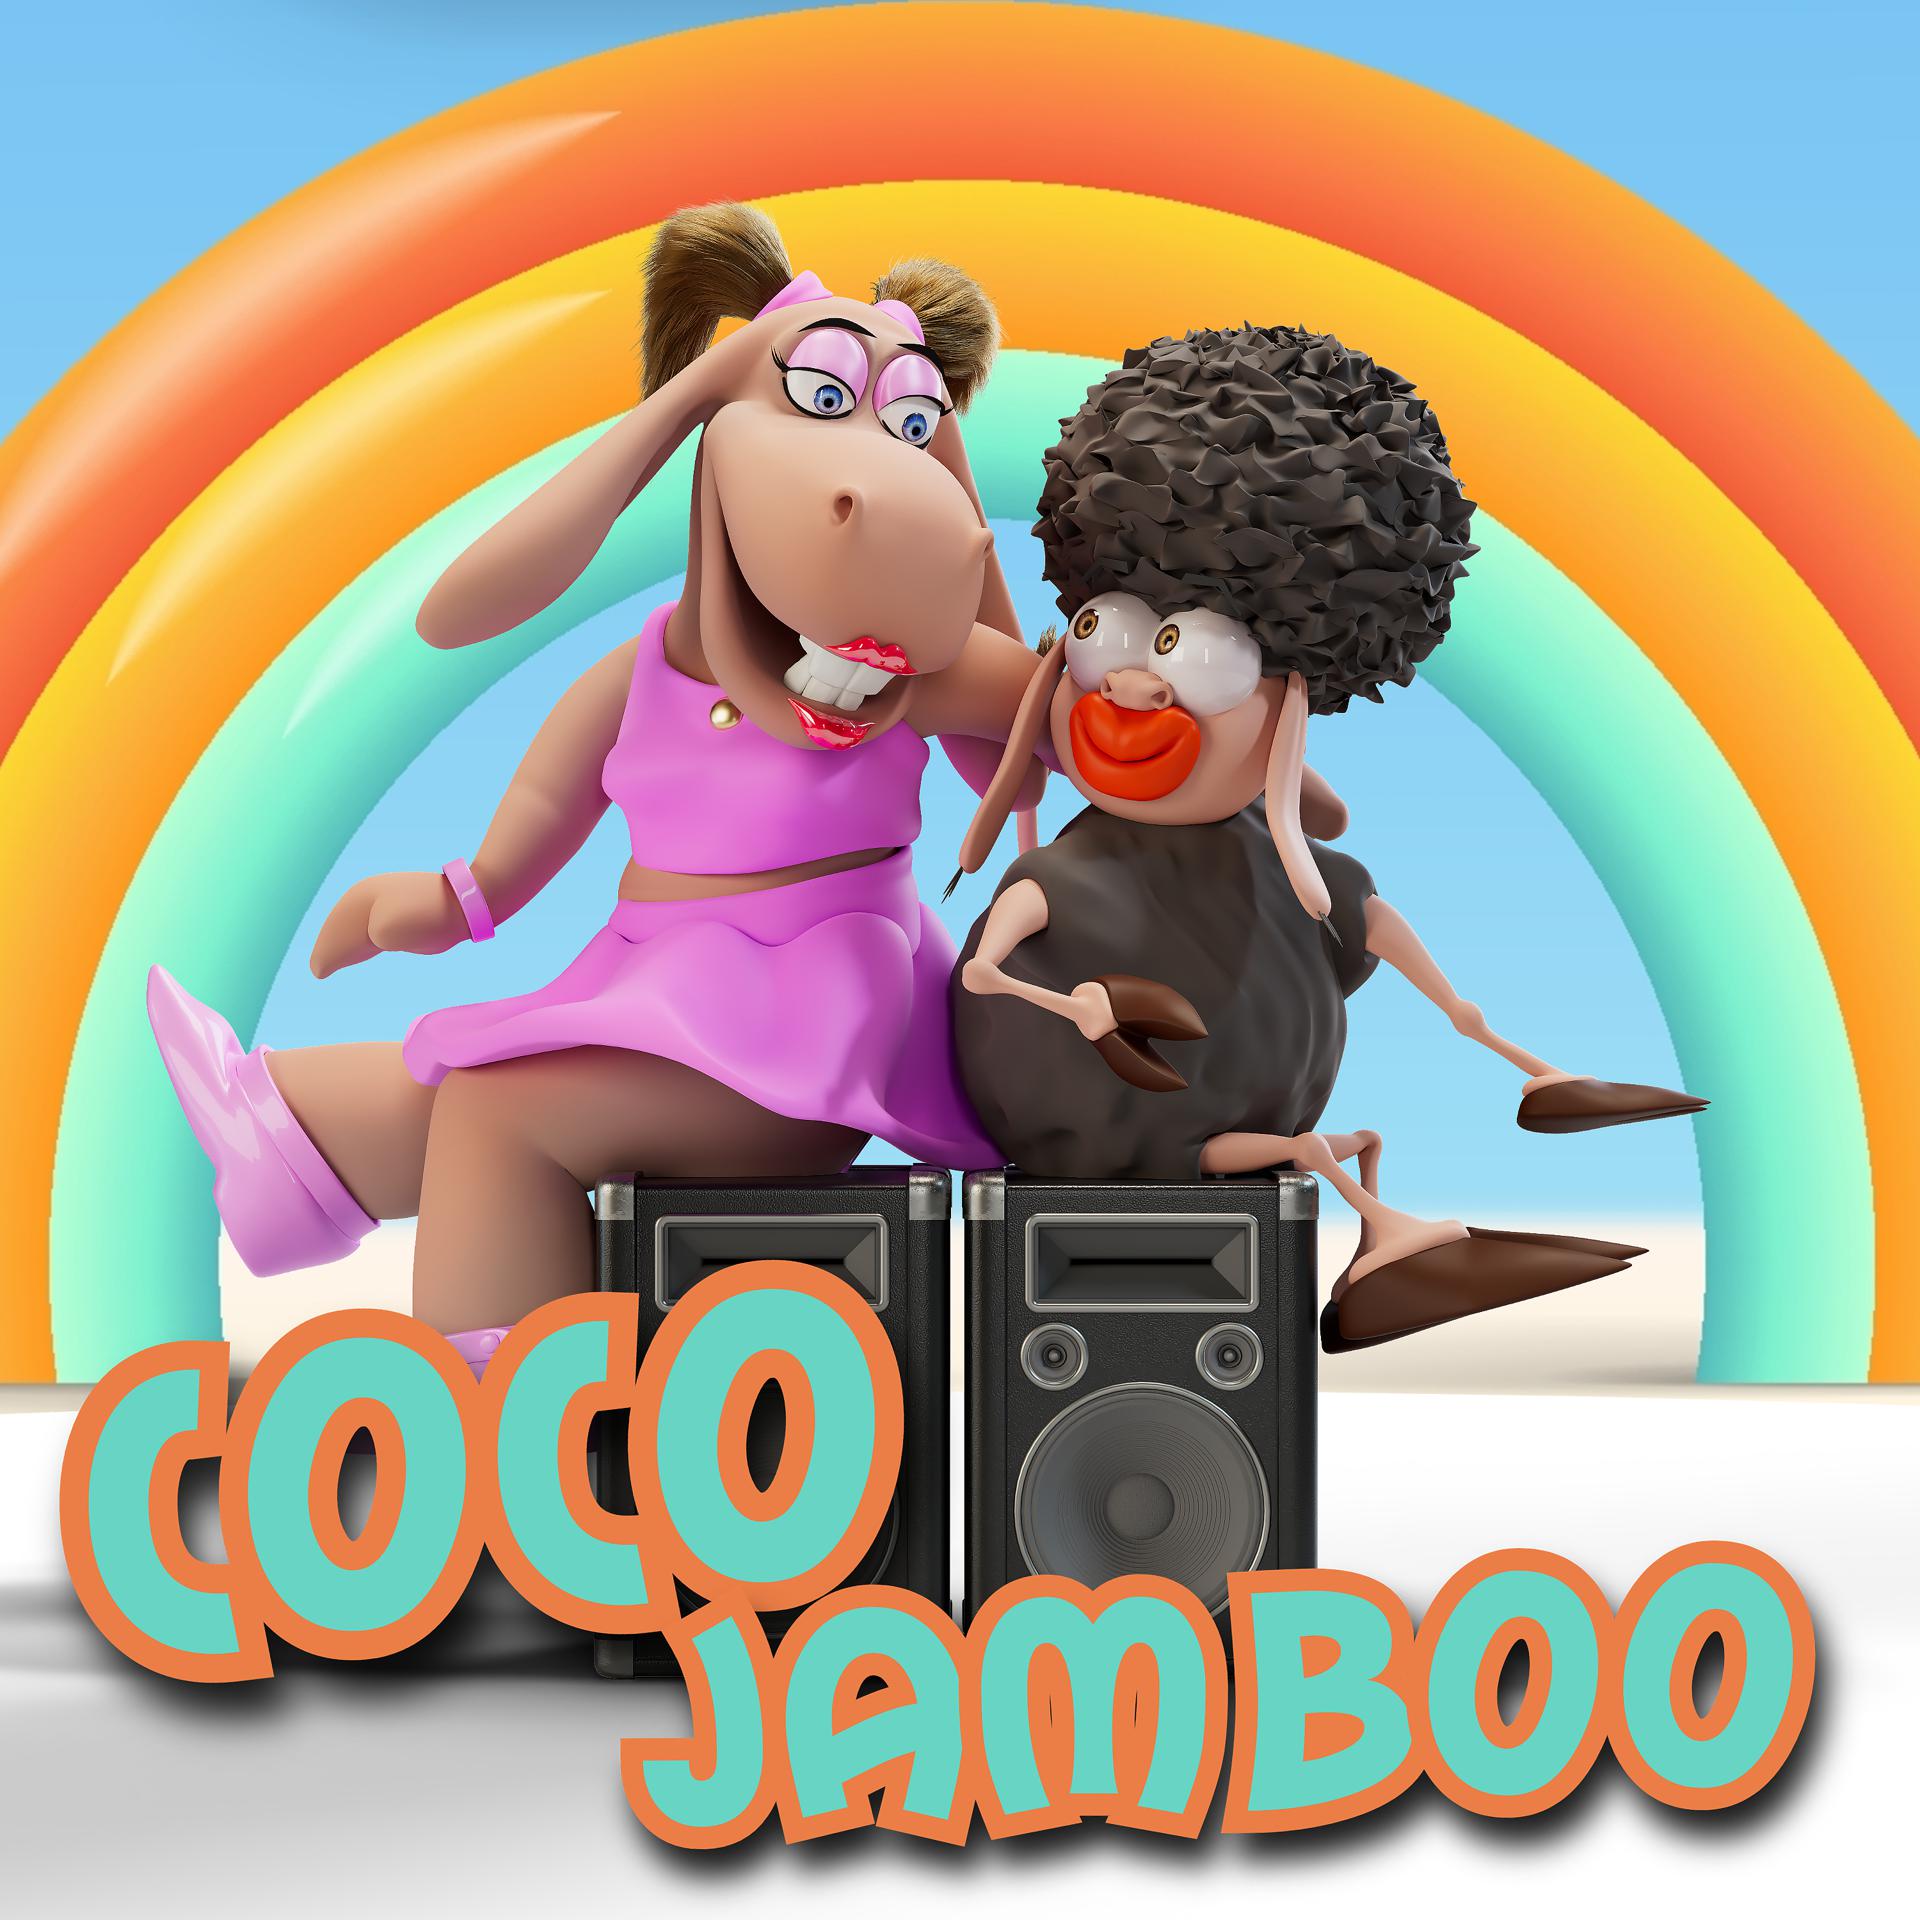 Постер альбома Coco Jamboo